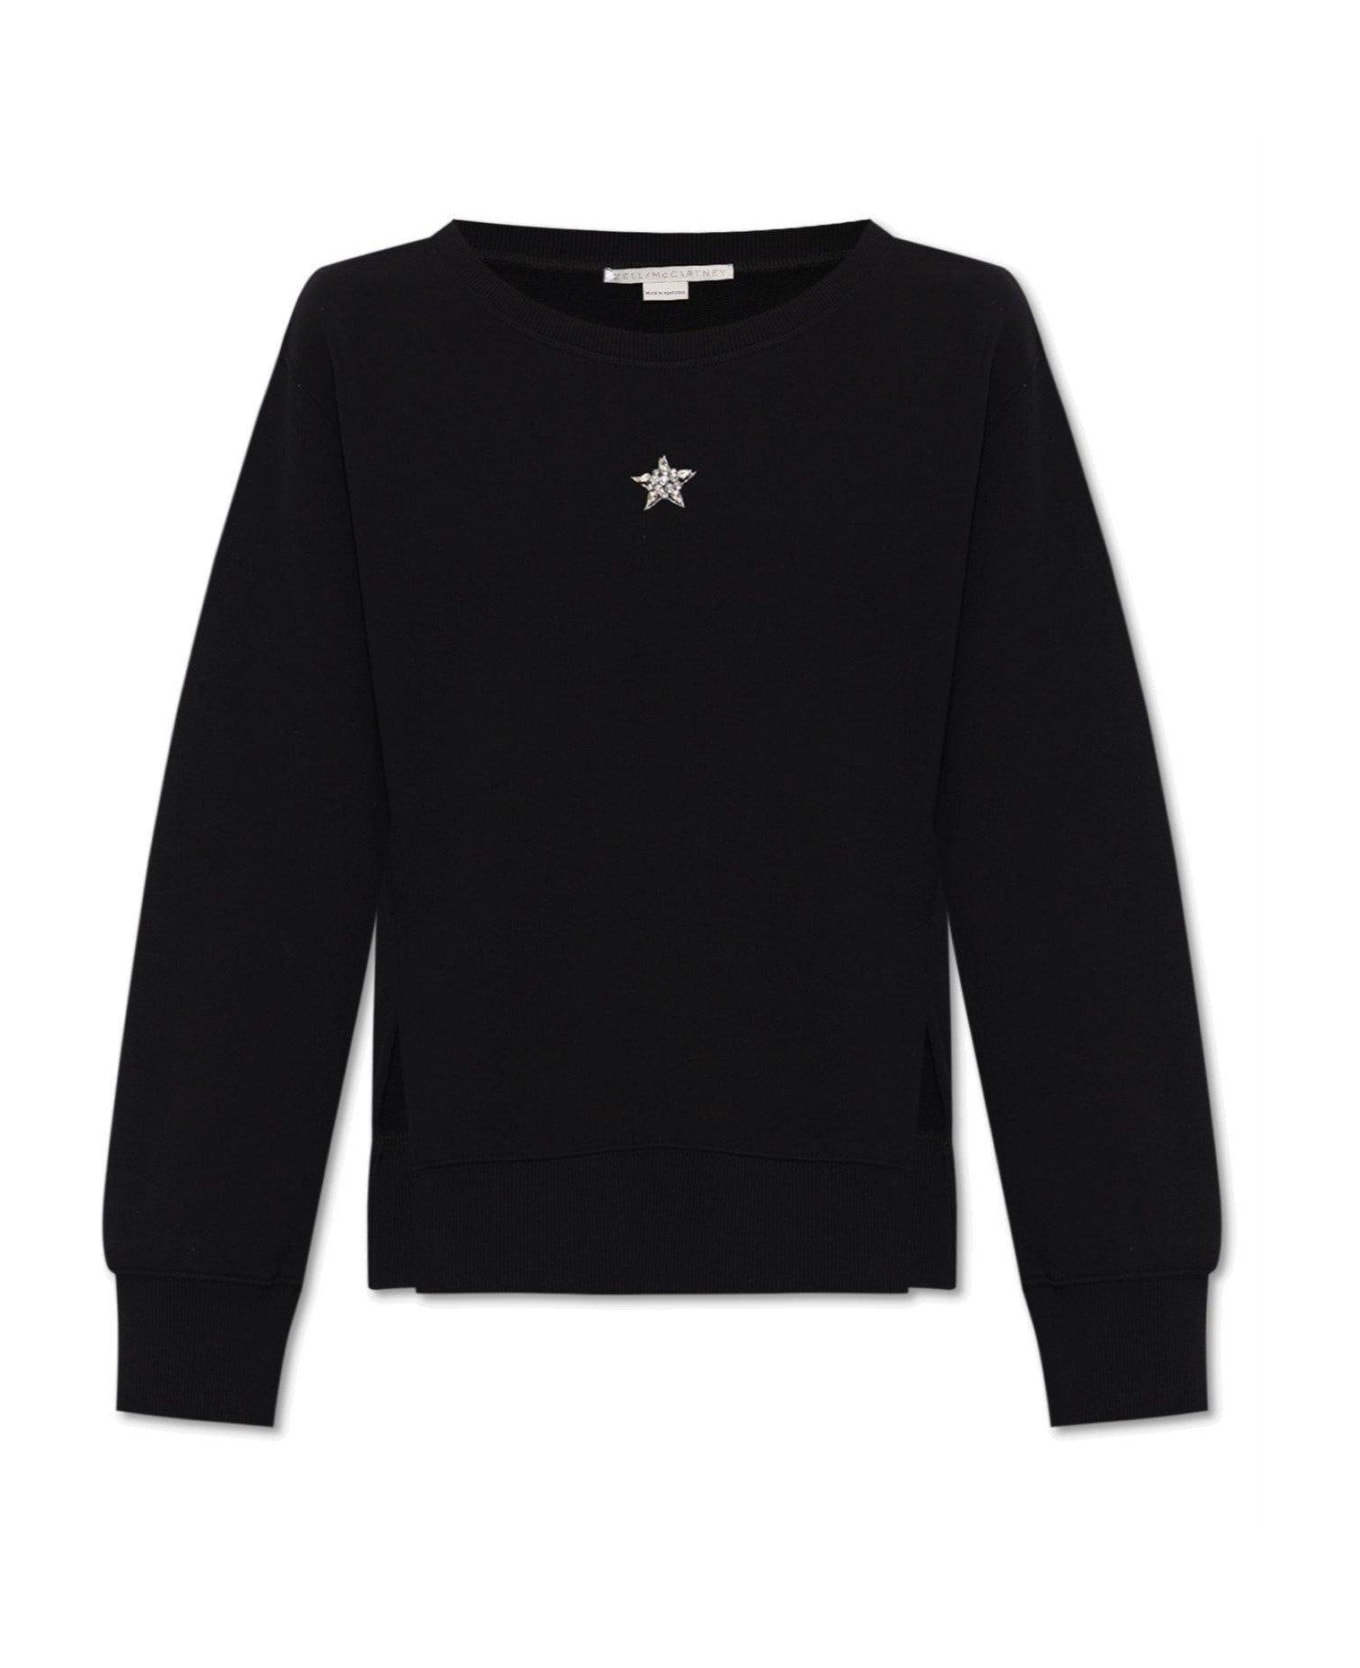 Stella McCartney Appliqued Sweatshirt - Black フリース